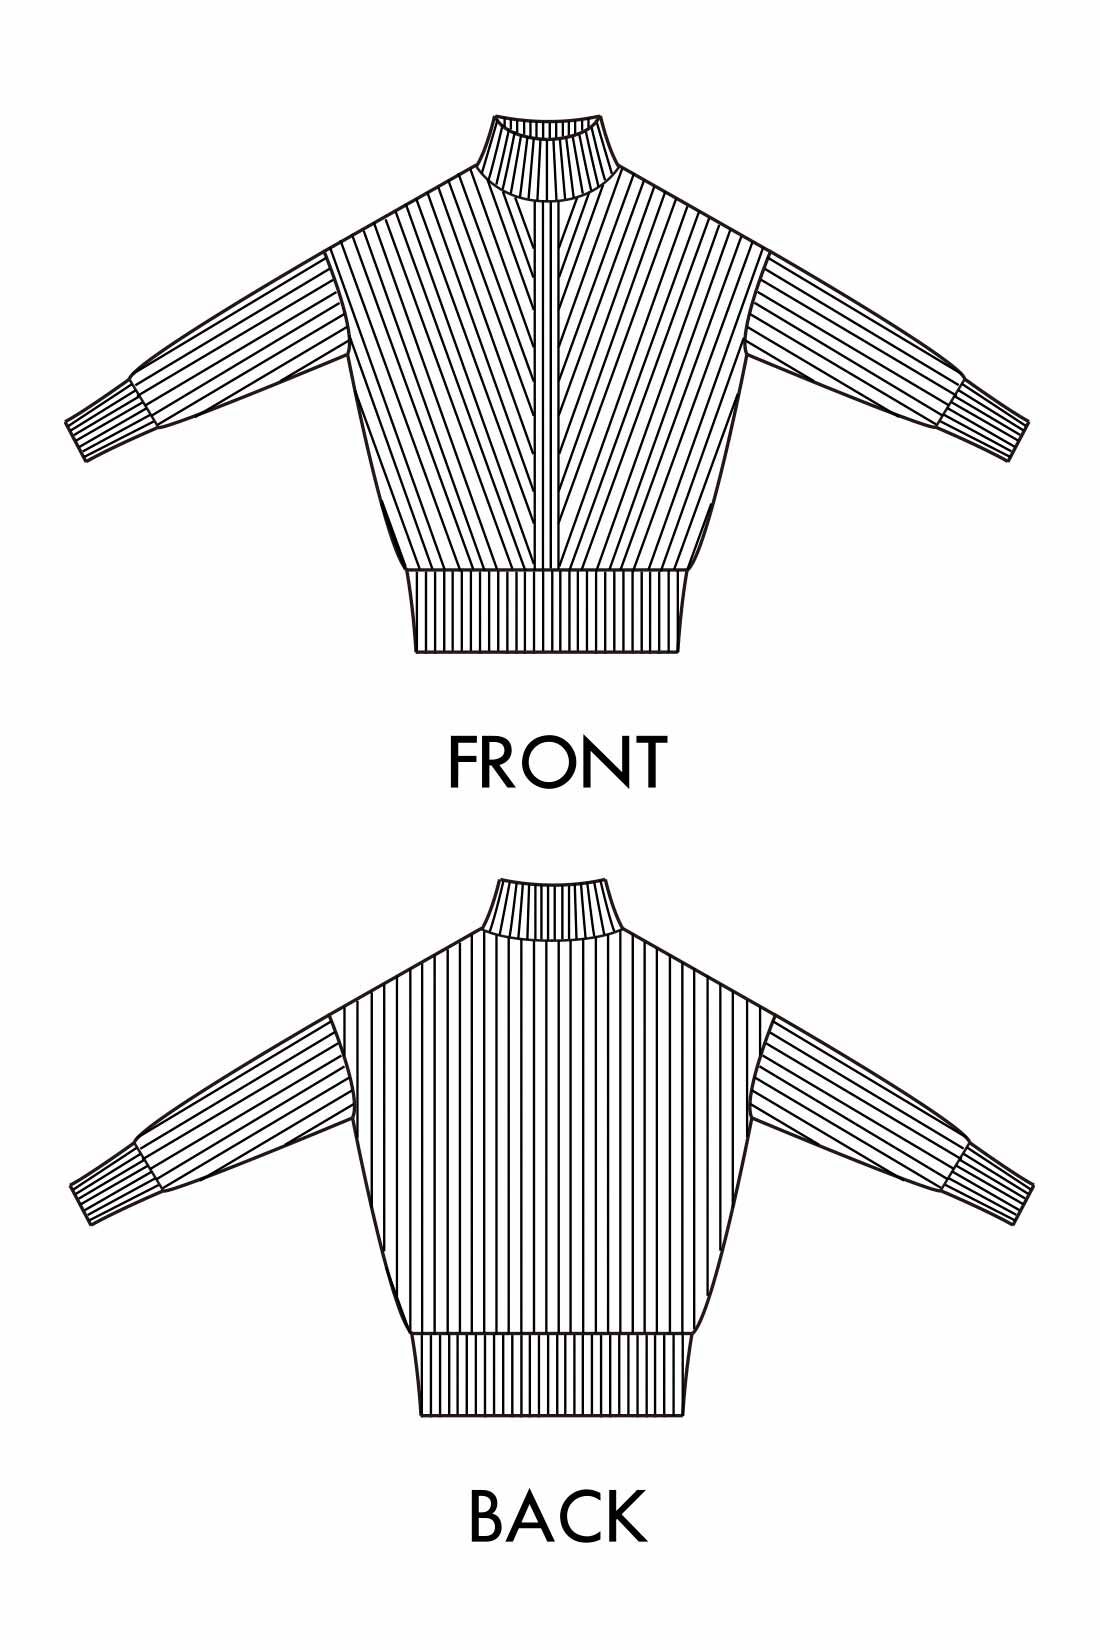 Real Stock|IEDIT[イディット]　V字の編み柄遣いで細見せ マシンウォッシャブルがうれしい アルパカ混素材のニットチュニック〈グレー〉|大きすぎないシルエットで華奢見えを演出。背面と袖はシンプルな編み地ですっきり。